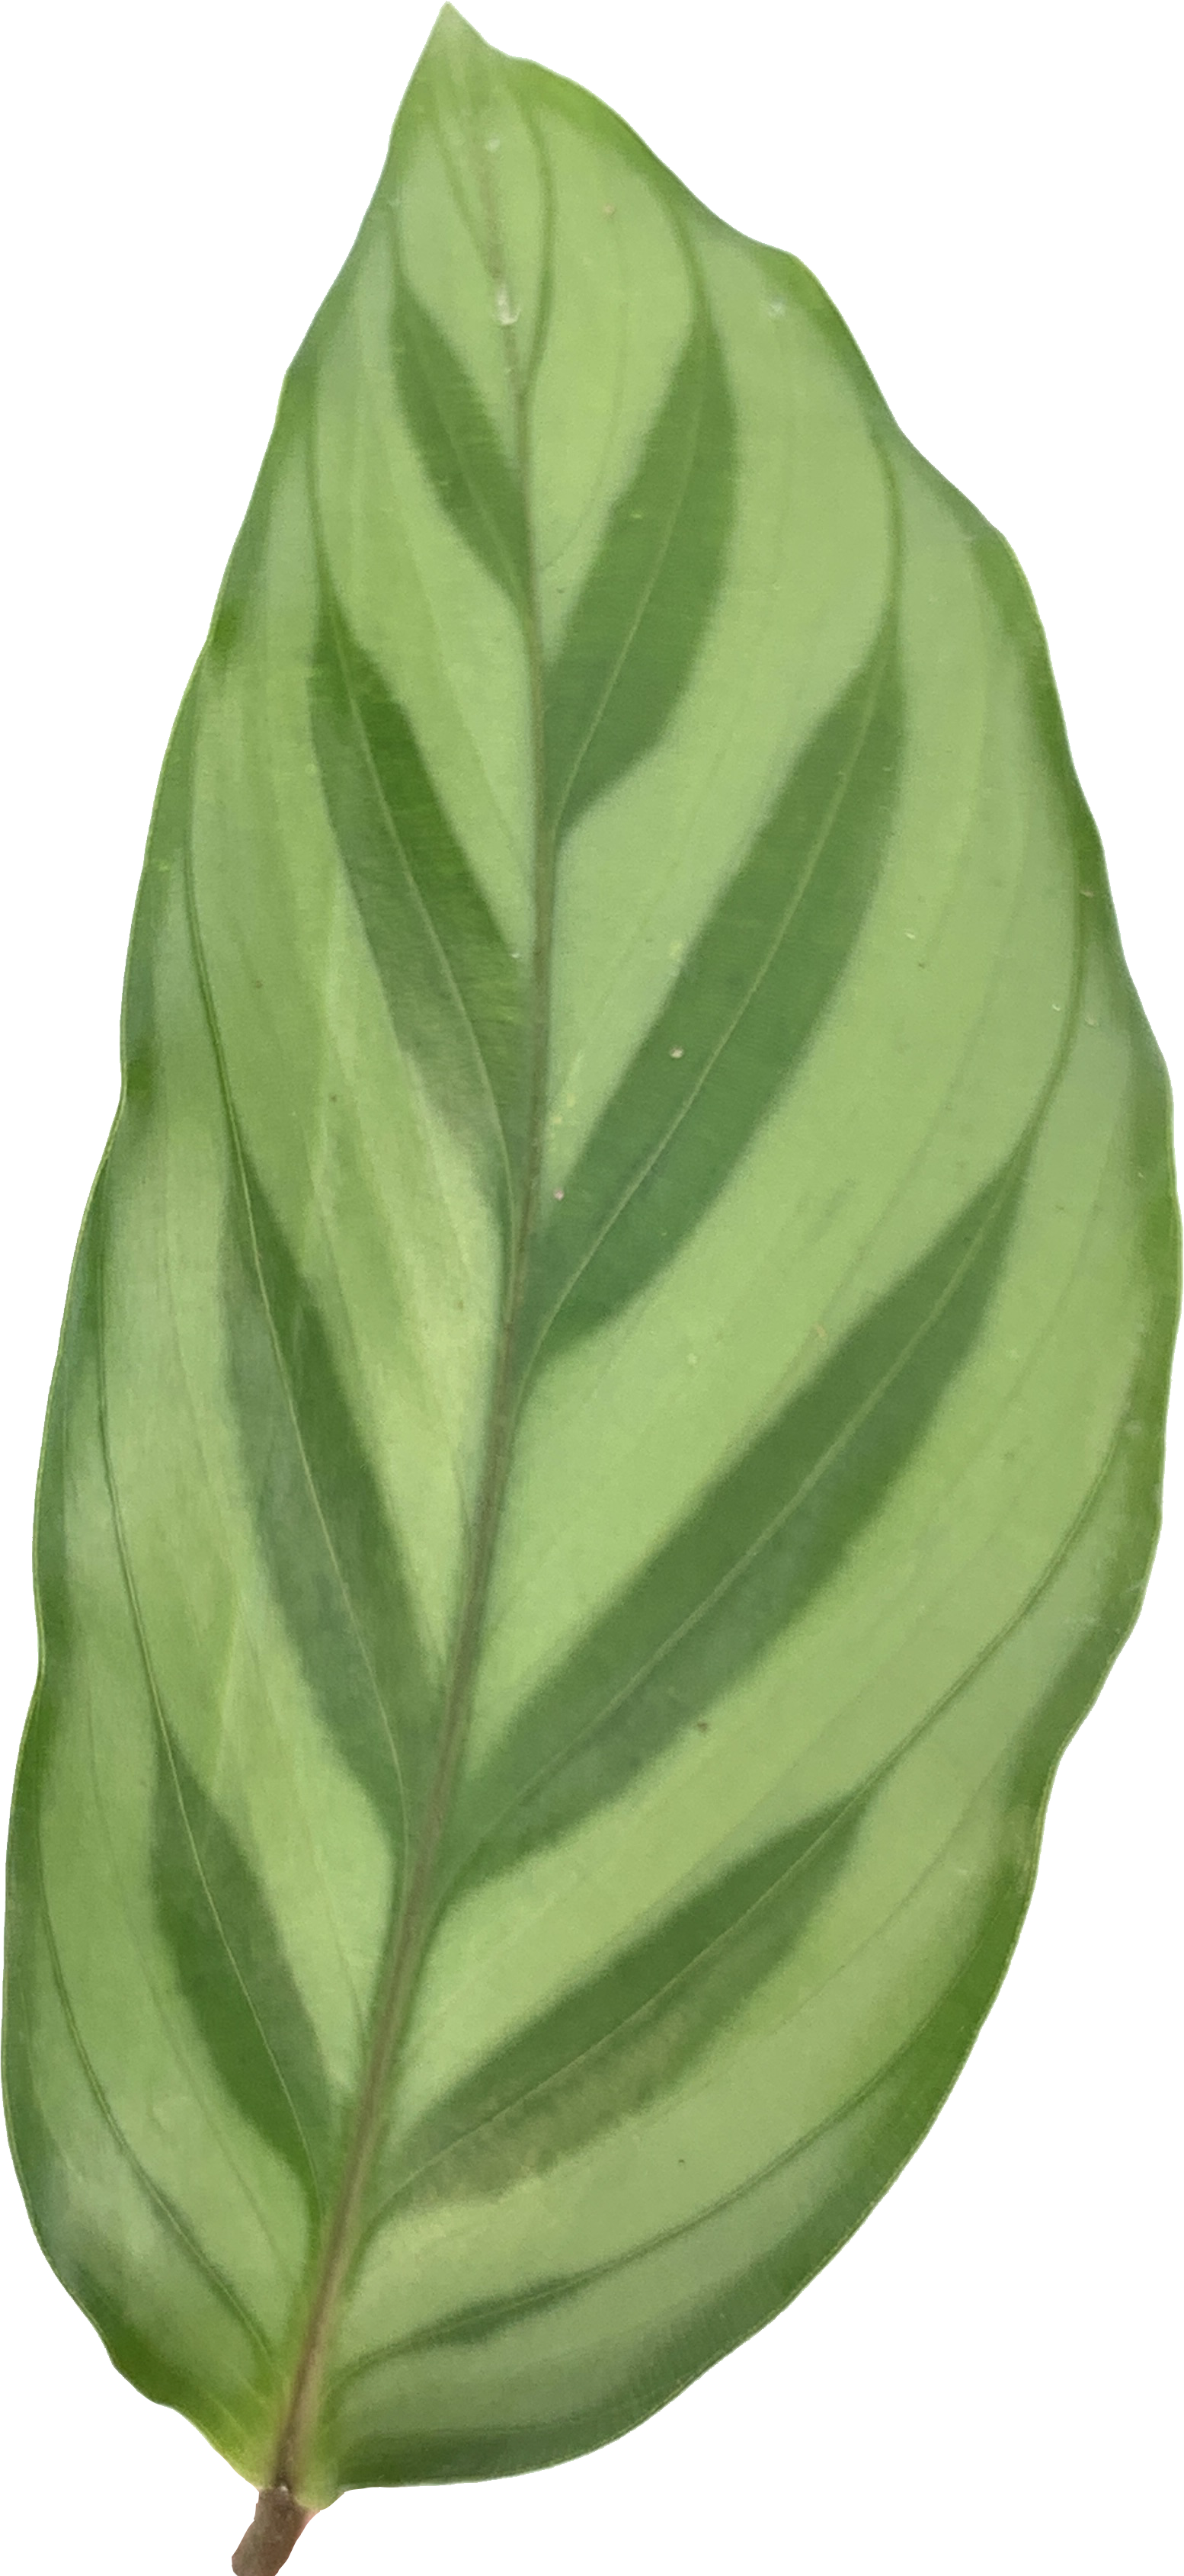 Calathea Leopardina, Goeppertia Concinna